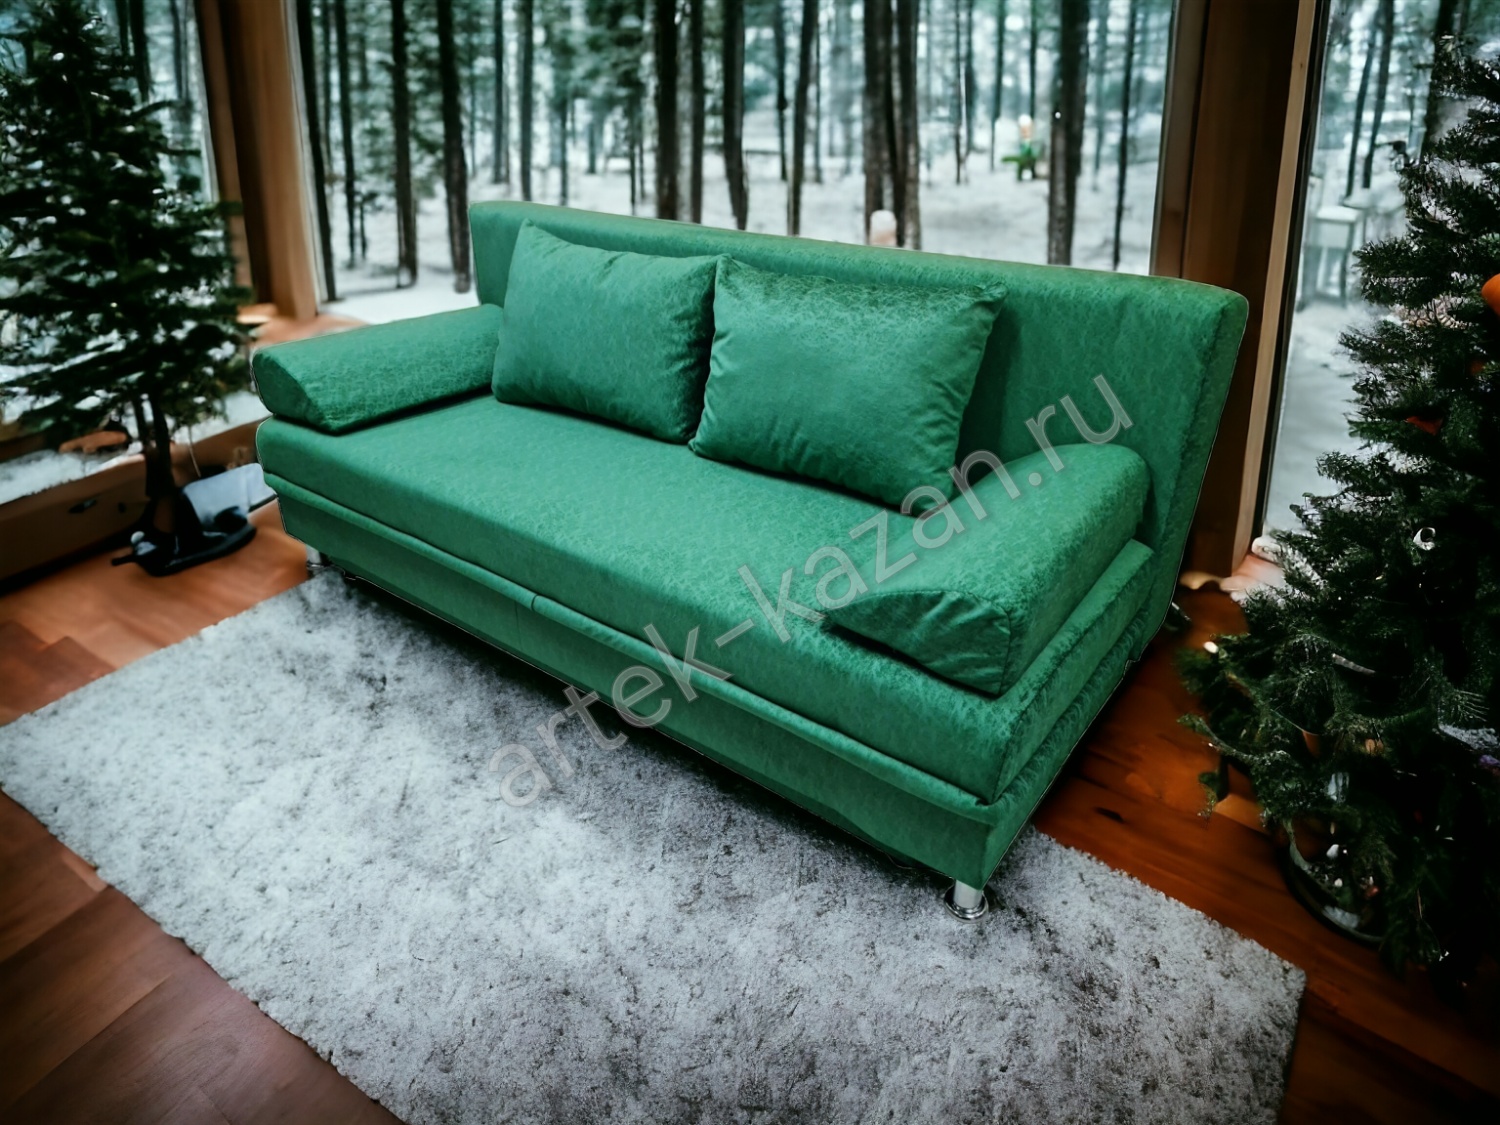 Диван еврокнижка -Эконом- флок зелёного цвета Зеро, цена 11000руб. Купить недорогой диван по низкой цене от производителя можно у нас.